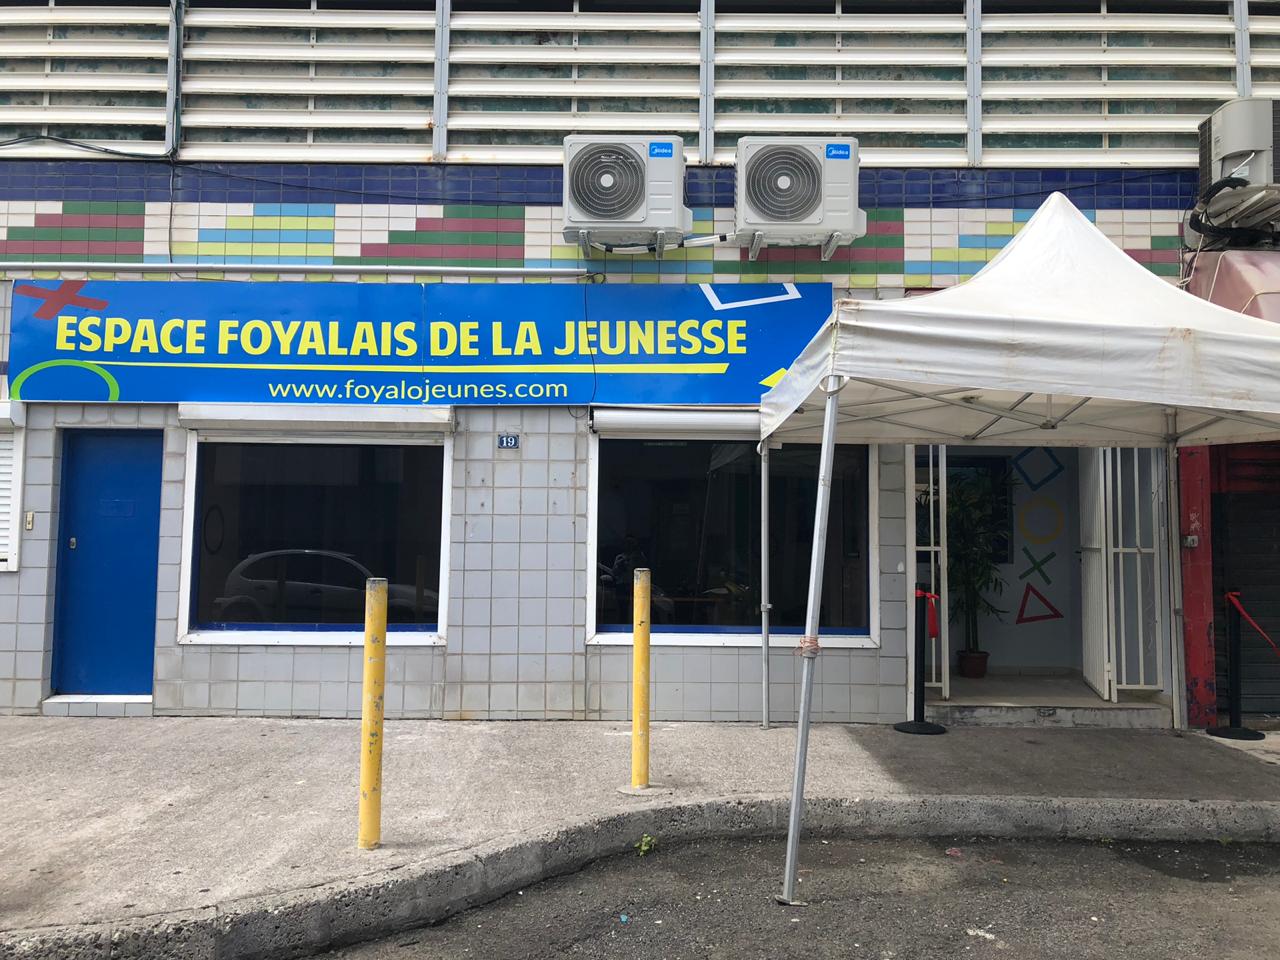     L'Espace Foyalais de la Jeunesse inauguré, ce samedi à Fort-de-France

